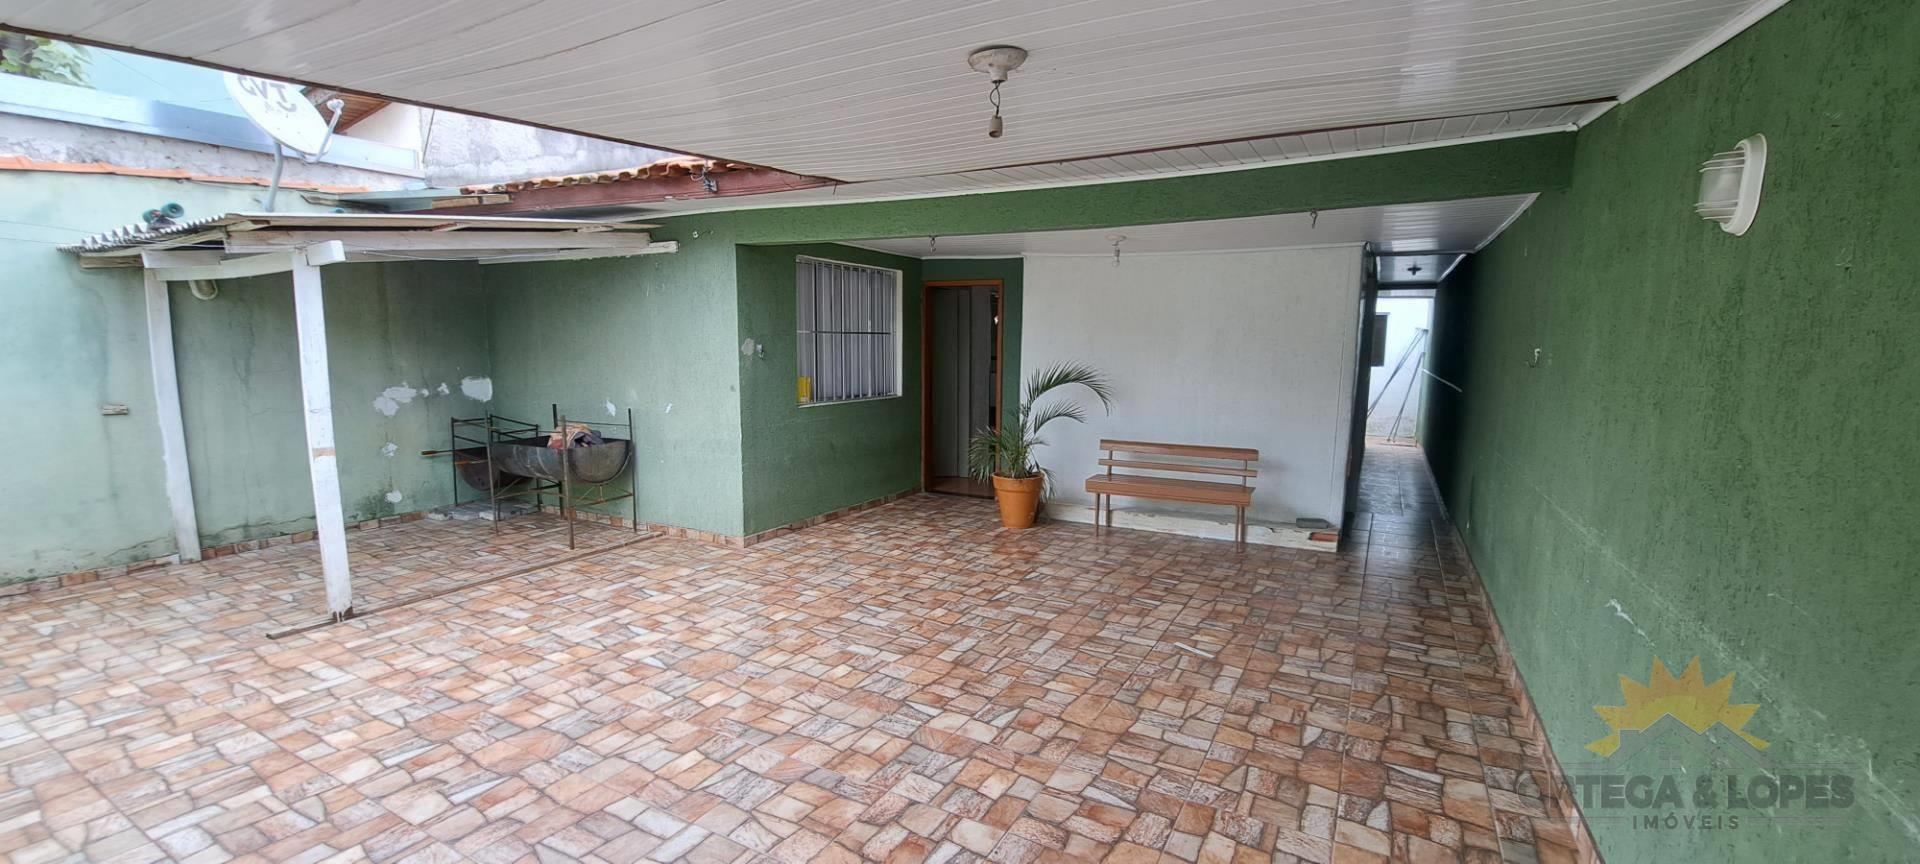 Casa Residencial para venda no bairro Sitio Cercado em Curitiba/PR com 130m² por R$ 350.000,00